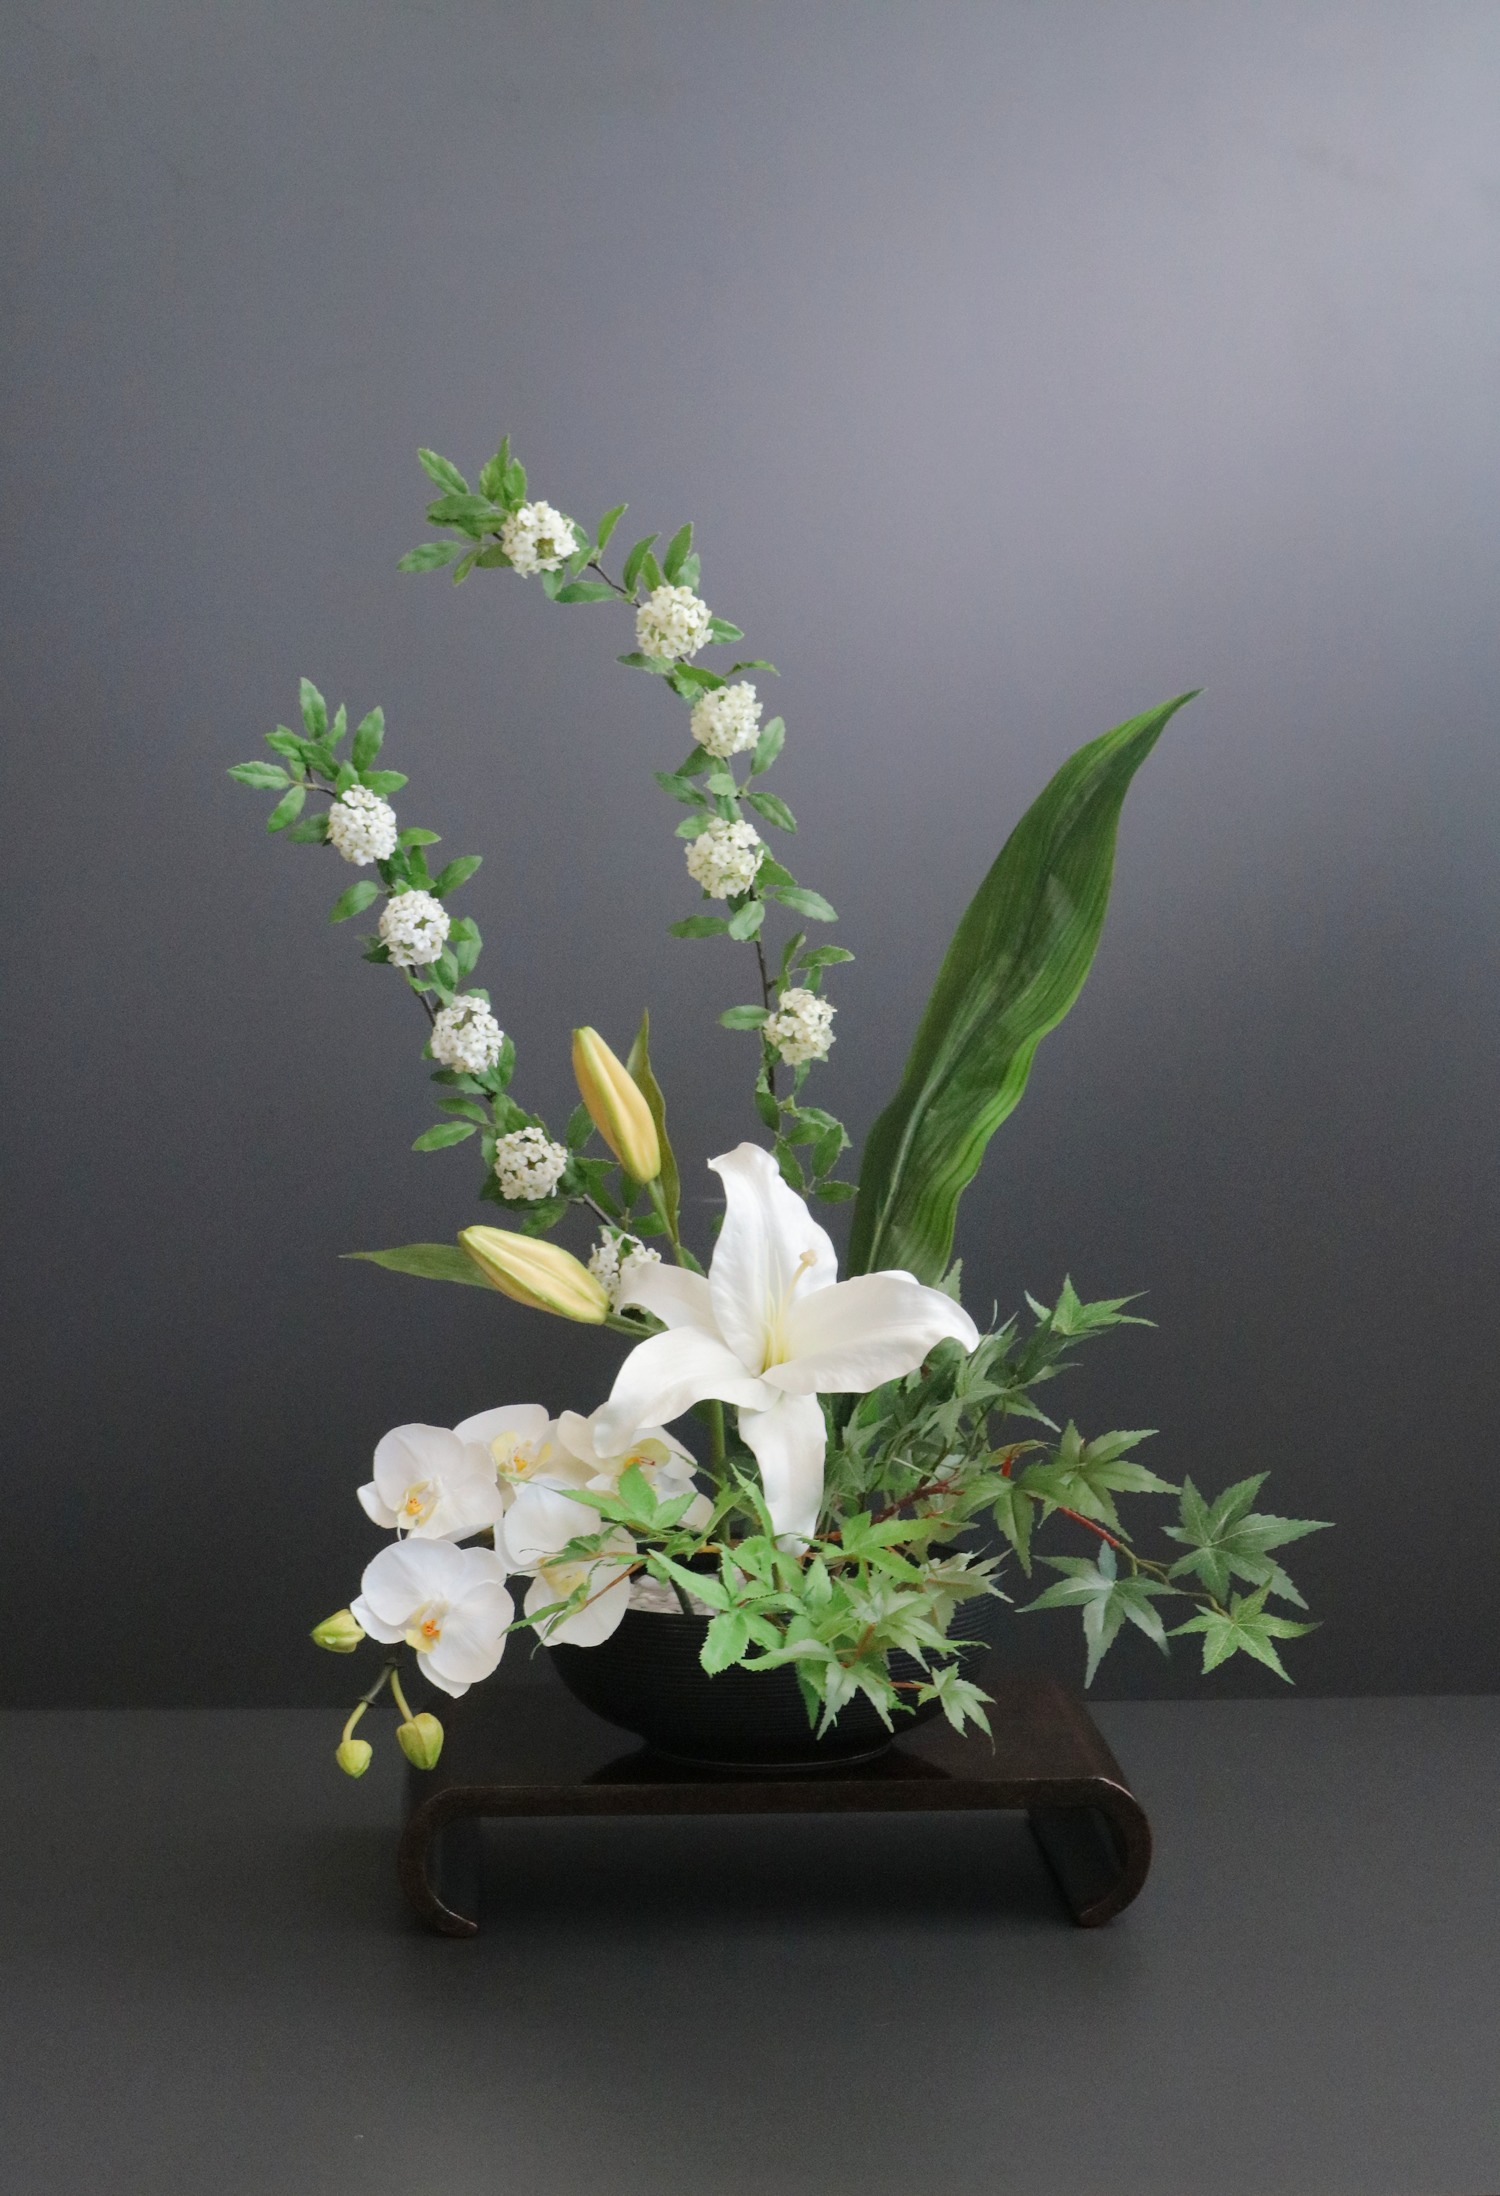 カサブランカ×胡蝶蘭×コデマリ 和風スタイル 造花 アートフラワー Akanbi